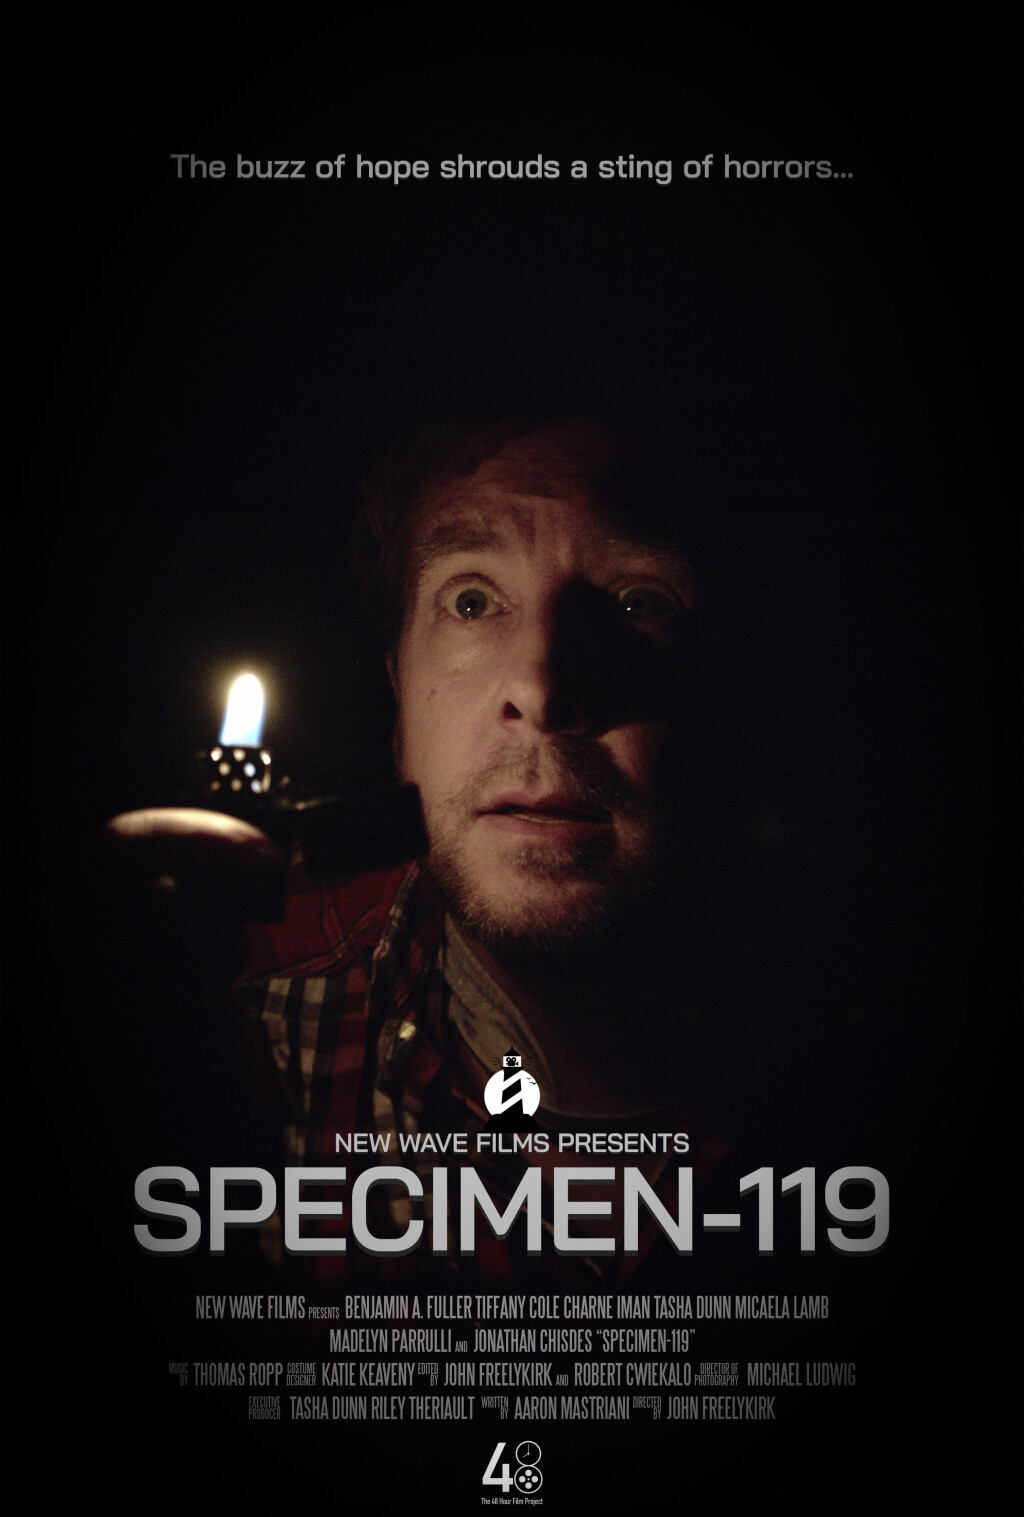 Filmposter for SPECIMEN-119